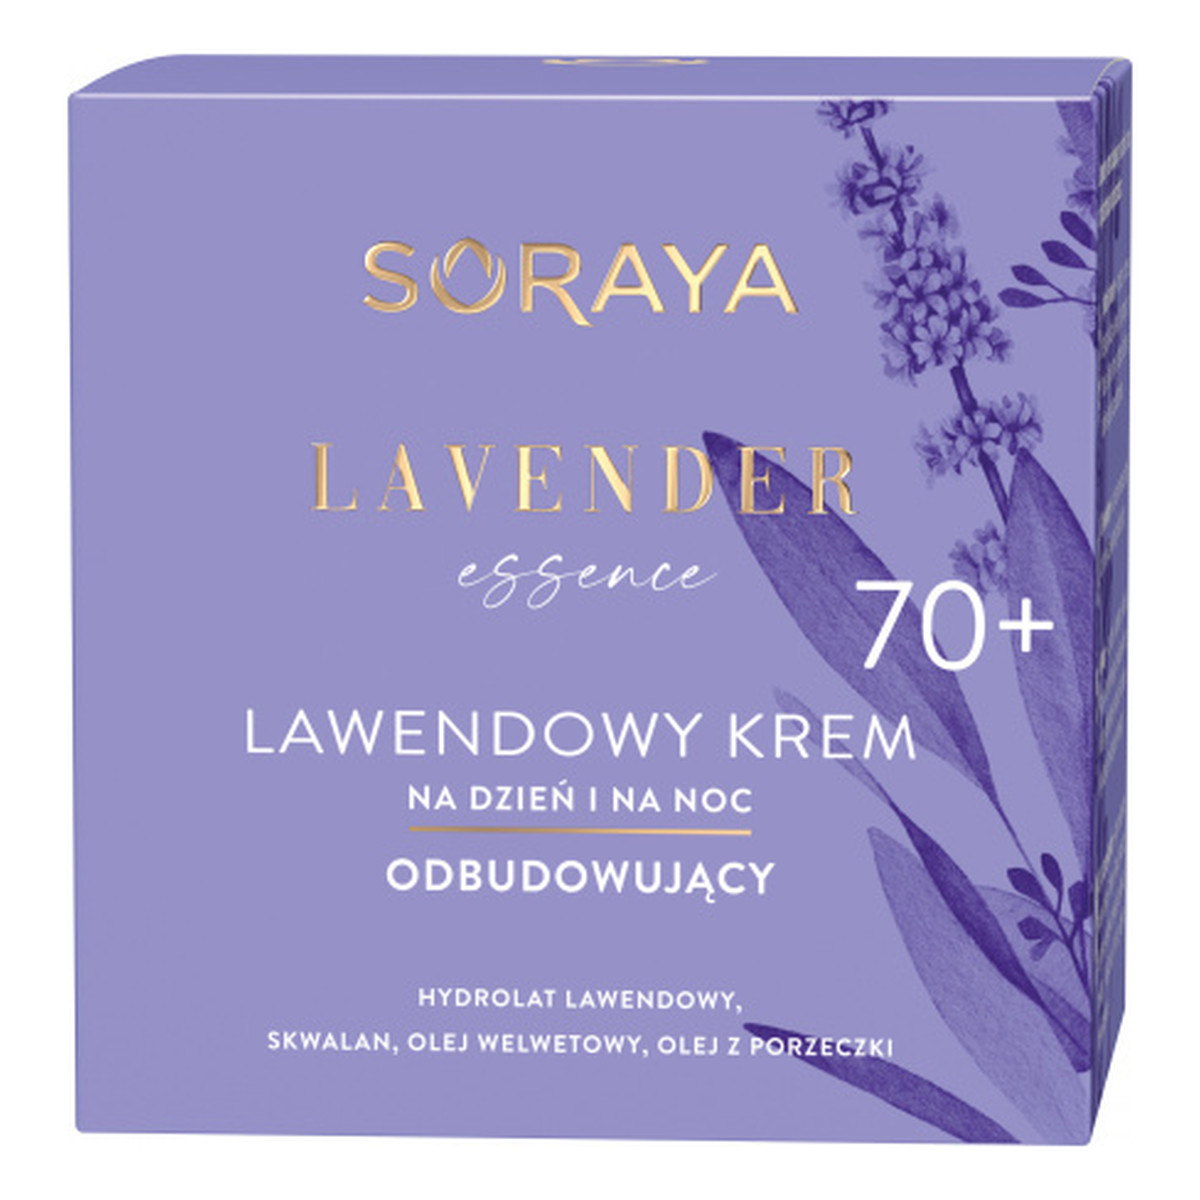 Soraya Lavender Essence Lawendowy krem odbudowujący na dzień i na noc 70+ 50ml